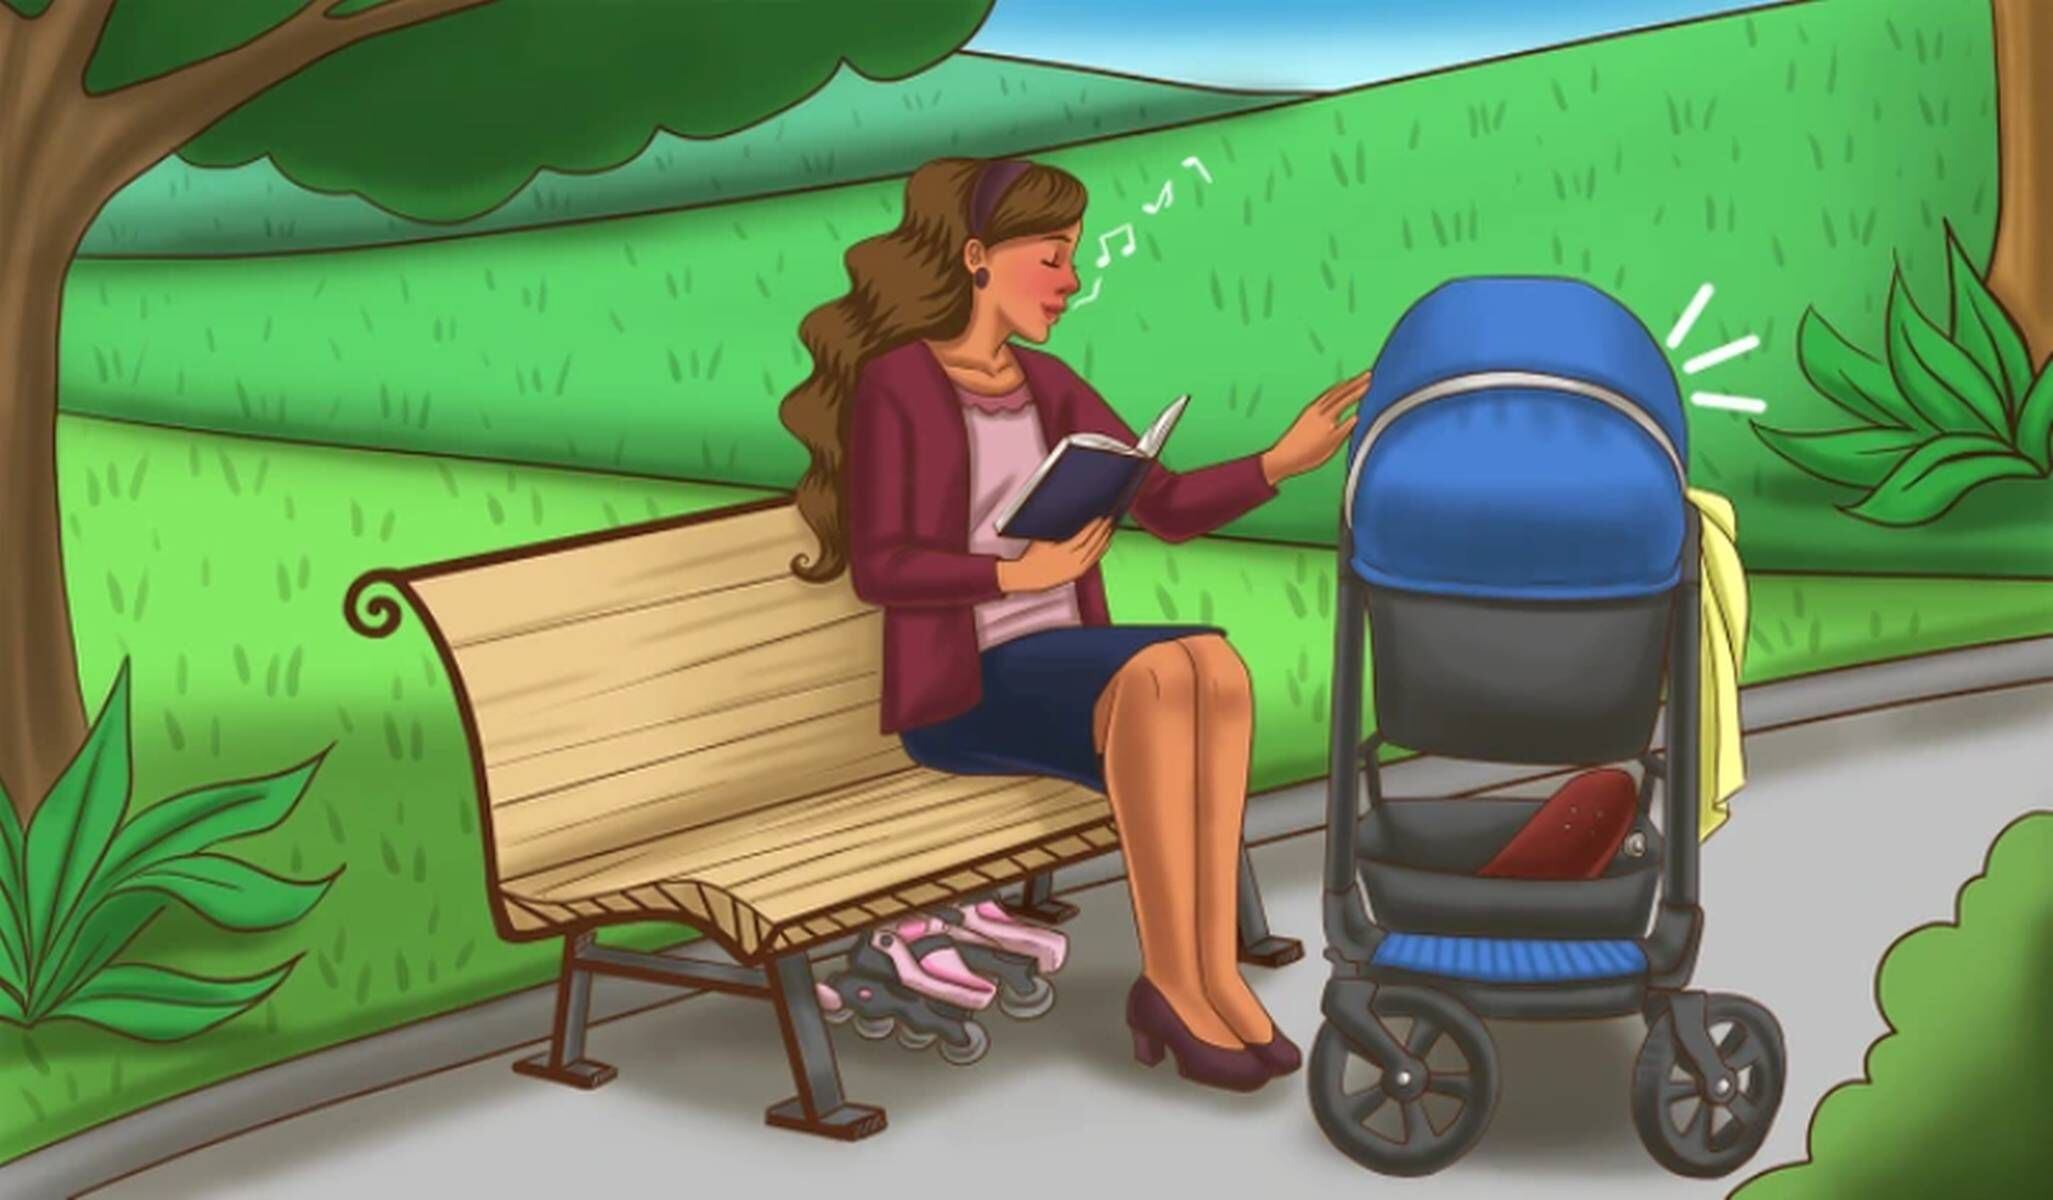 RETO VISUAL | Esta imagen te muestra a una mujer sentada en la banca de un parque, muy cerca del coche de su bebé. ¿Cuántos hijos tiene ella? (Foto: genial.guru)